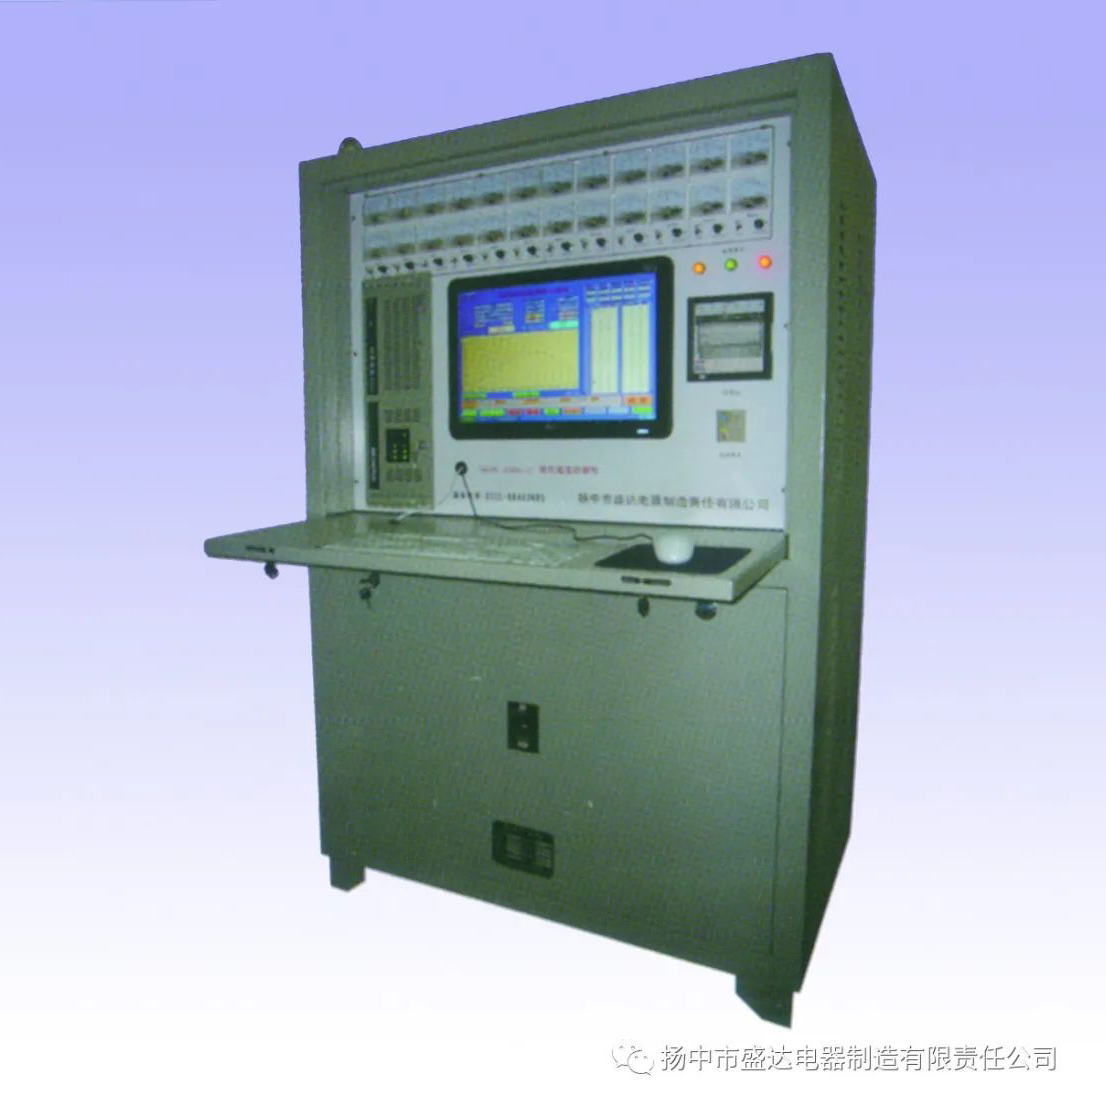 DKPC-12240、DKPC-12360、DKPC-12480系列远红外热处理温度控制器